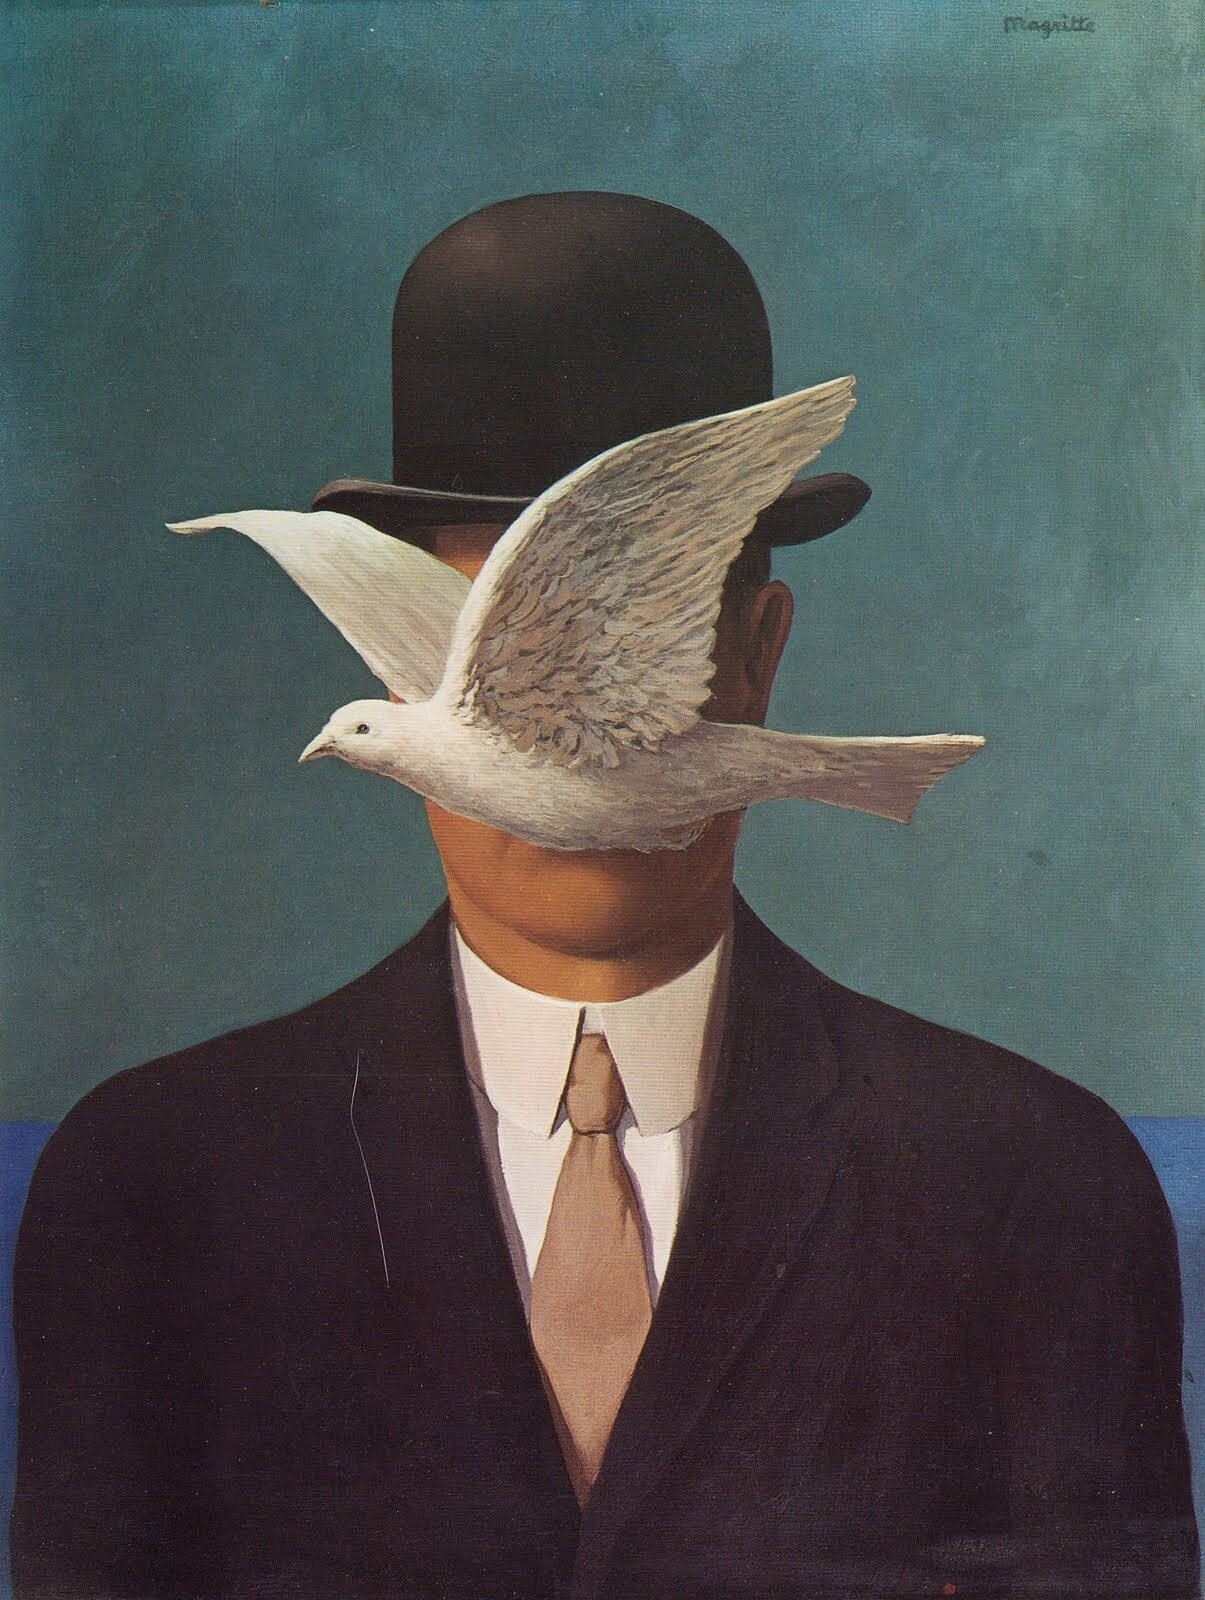 Ilustracja o kształcie pionowego prostokąta przedstawia obraz René Magritte’a „Człowiek w meloniku”. Ukazuje popiersie człowieka w marynarce, białej koszuli i krawacie. Na głowie ma założony melonik. Jego twarz zasłania lecący gołąb skierowany w lewą stronę. Tło jest koloru morskiego. 